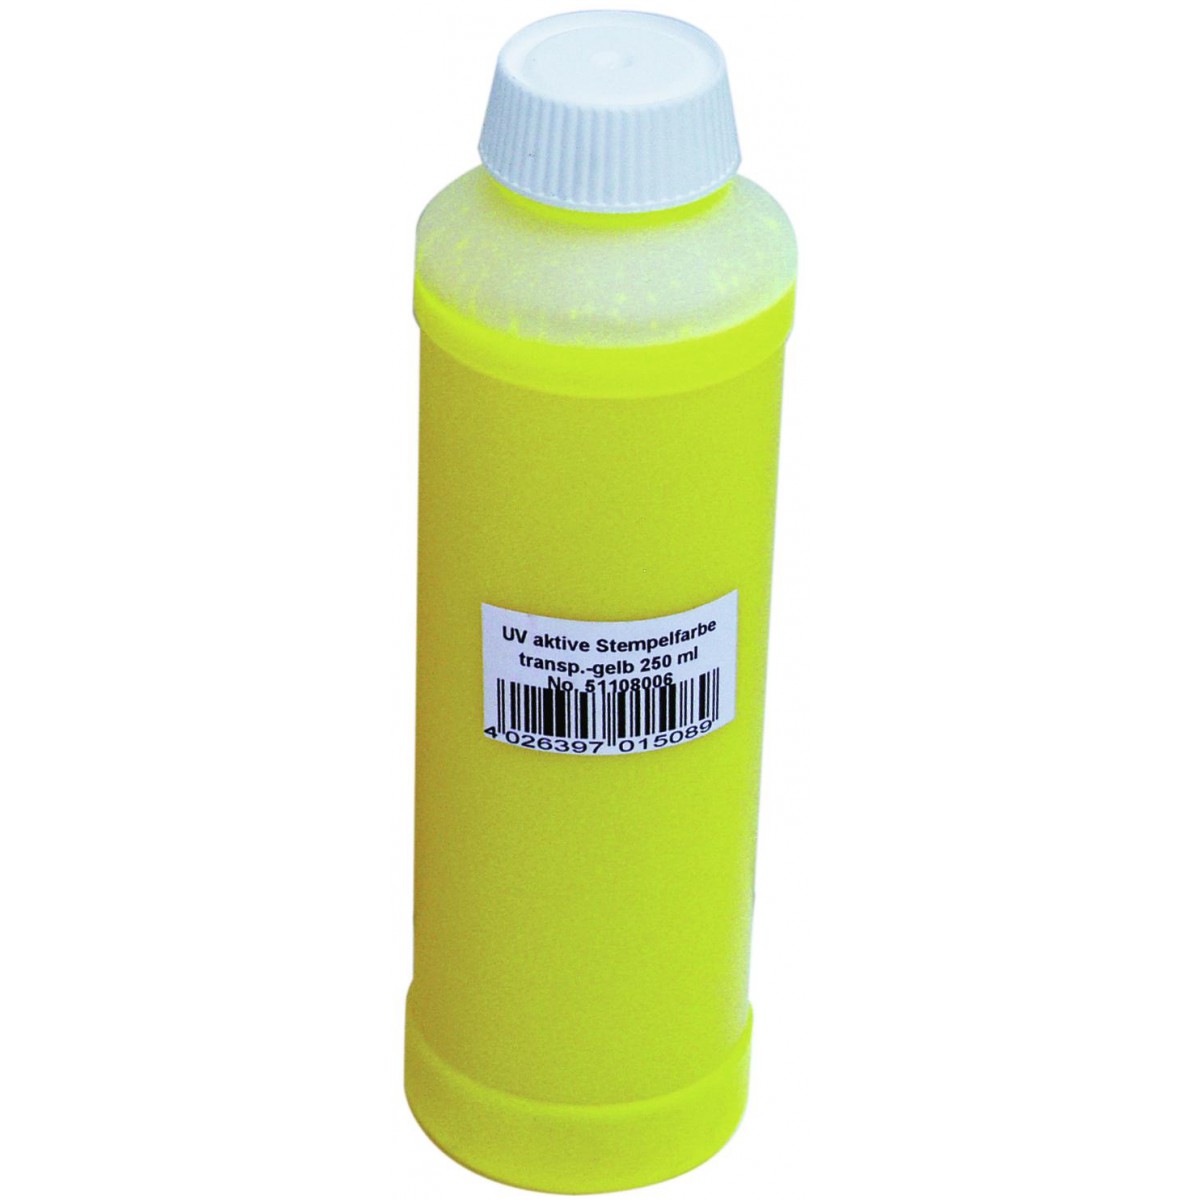 UV razítkovací barva 250ml, žlutá